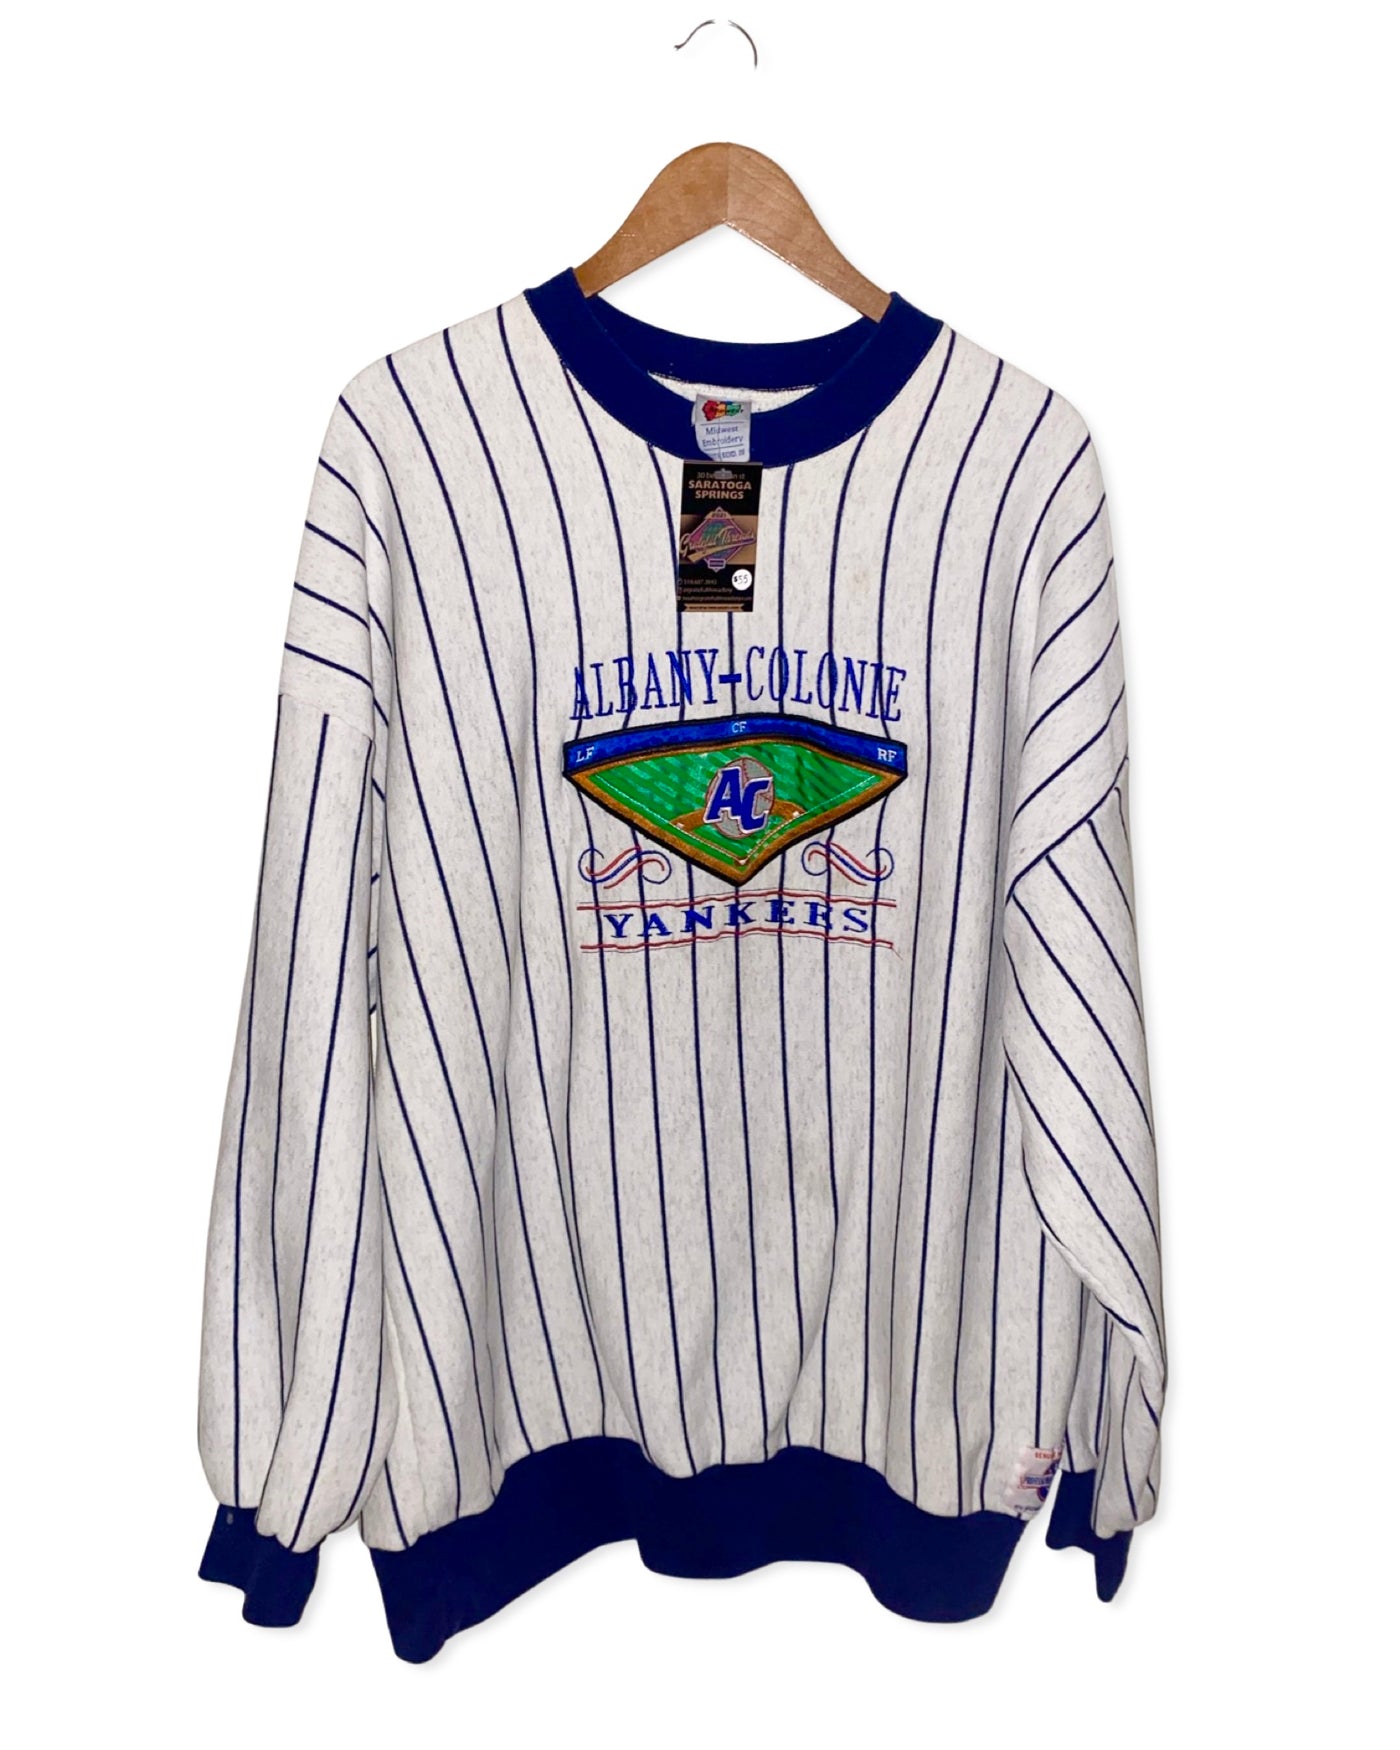 Vintage 90s Albany-Colonie Yankees Pinstripe Crewneck